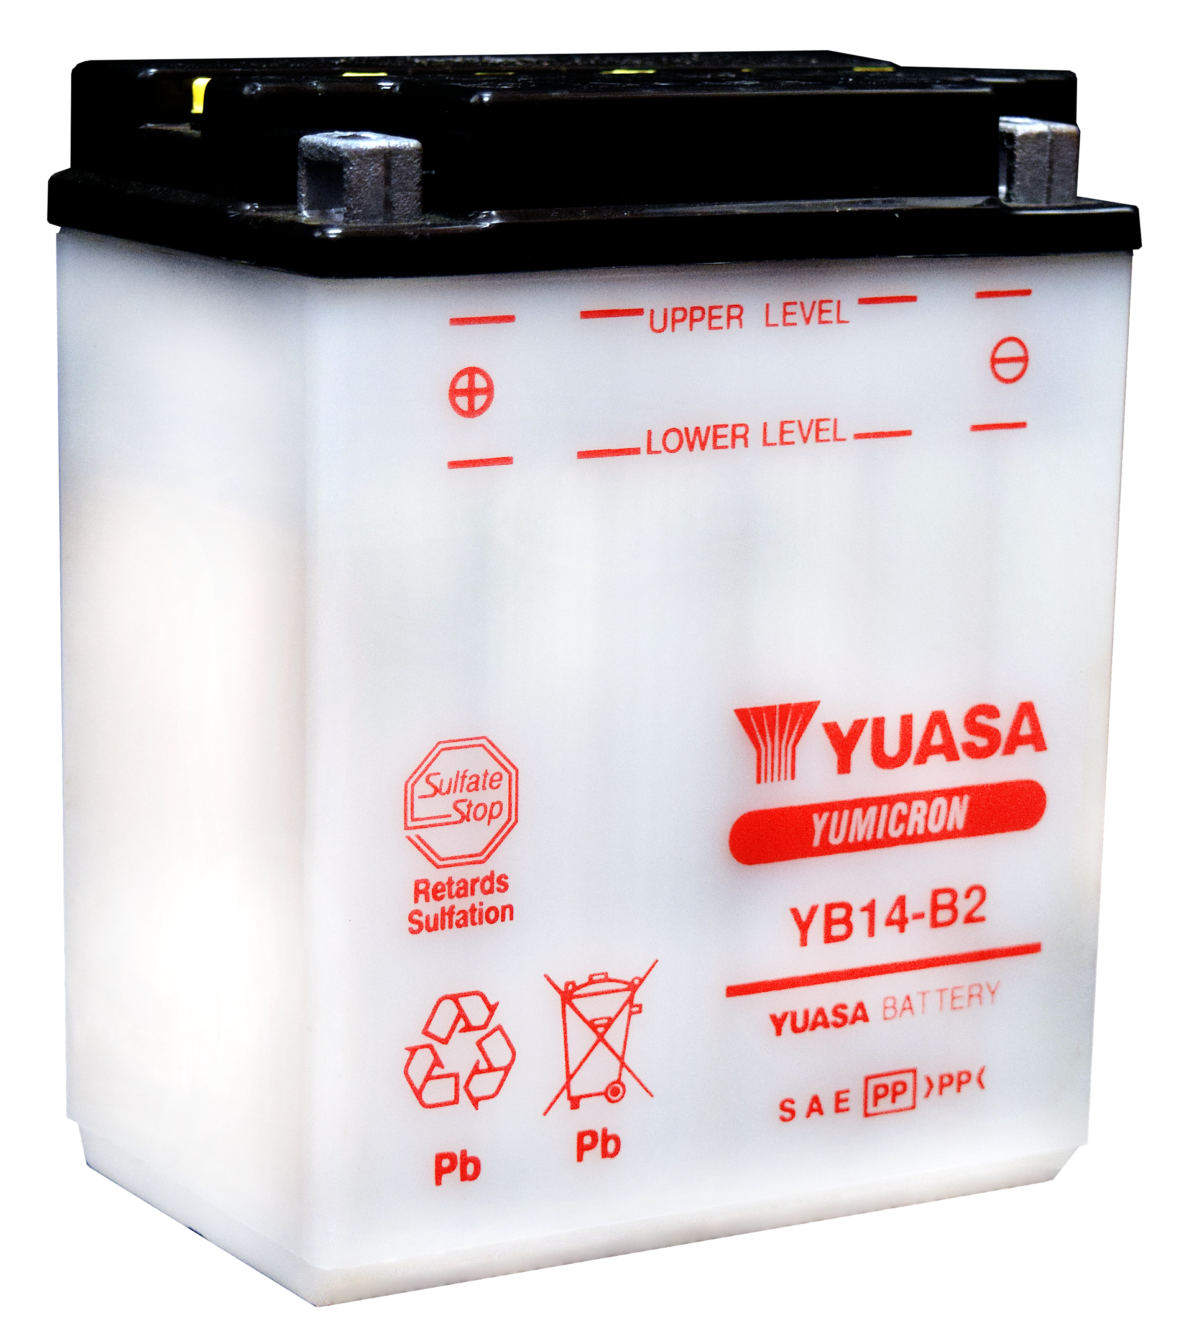 Yuasa Yumicron YB14-B2 Battery for motorsports, powersports, and motorcycle